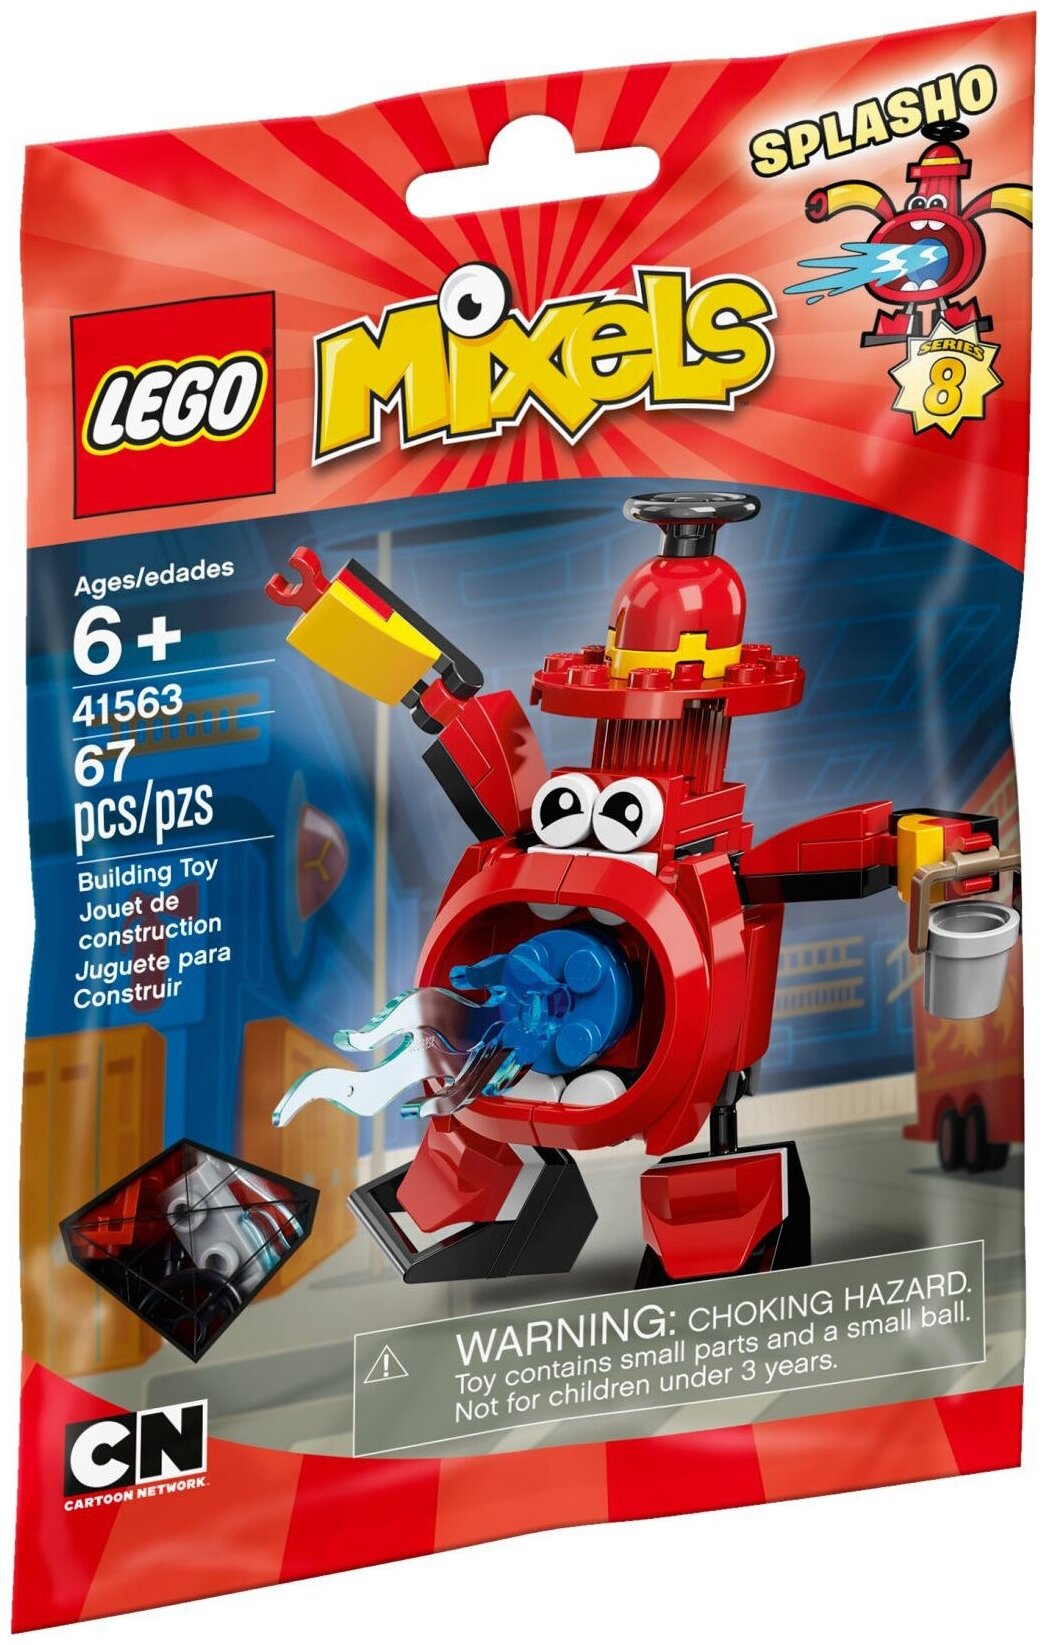 Конструктор LEGO Mixels 41563 Сплашо, 67 дет.